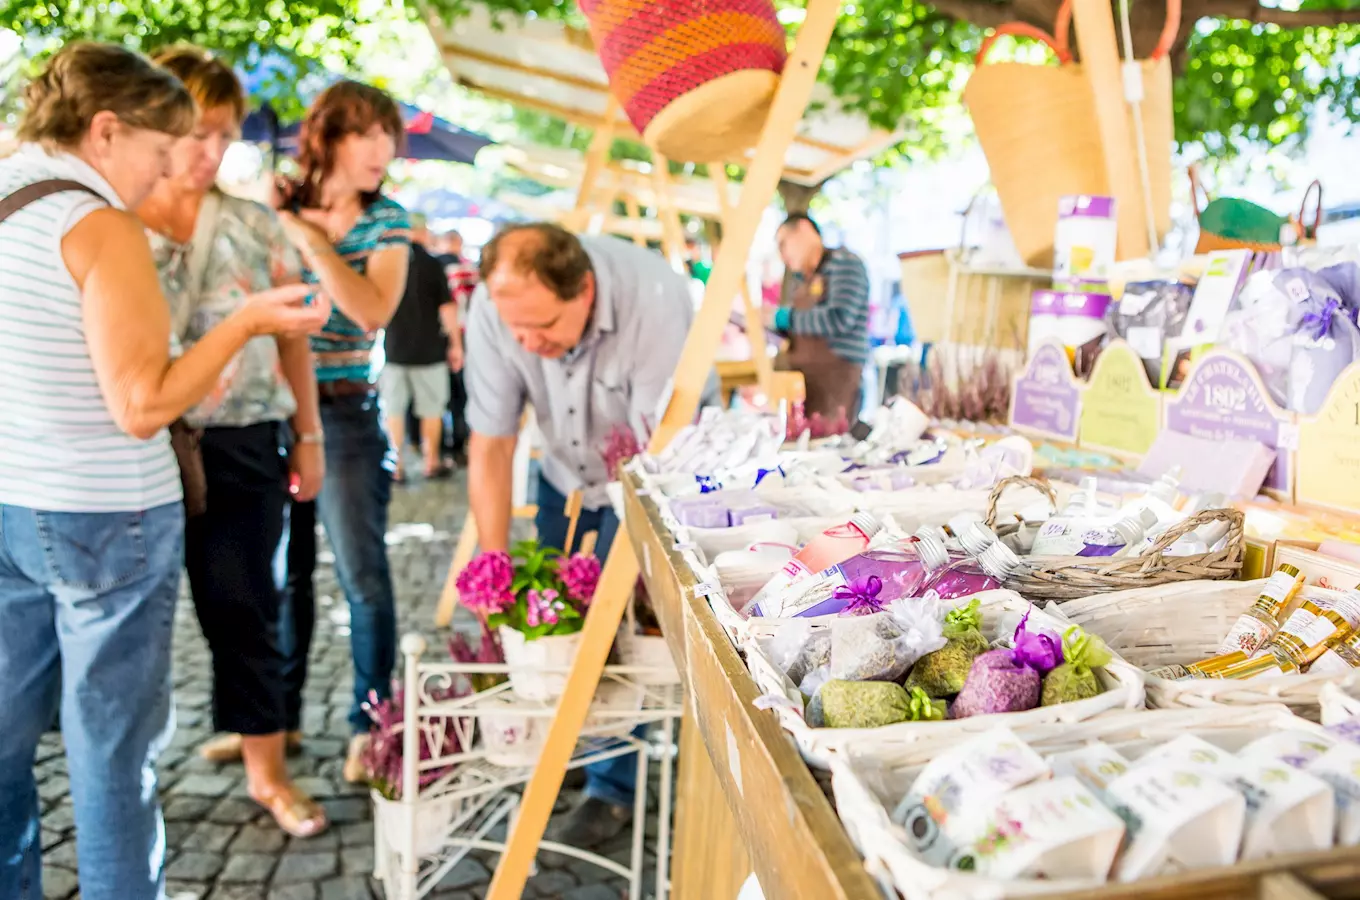 Tradiční Francouzský trh se letos bude konat na Pražském hradě u příležitosti Garden party